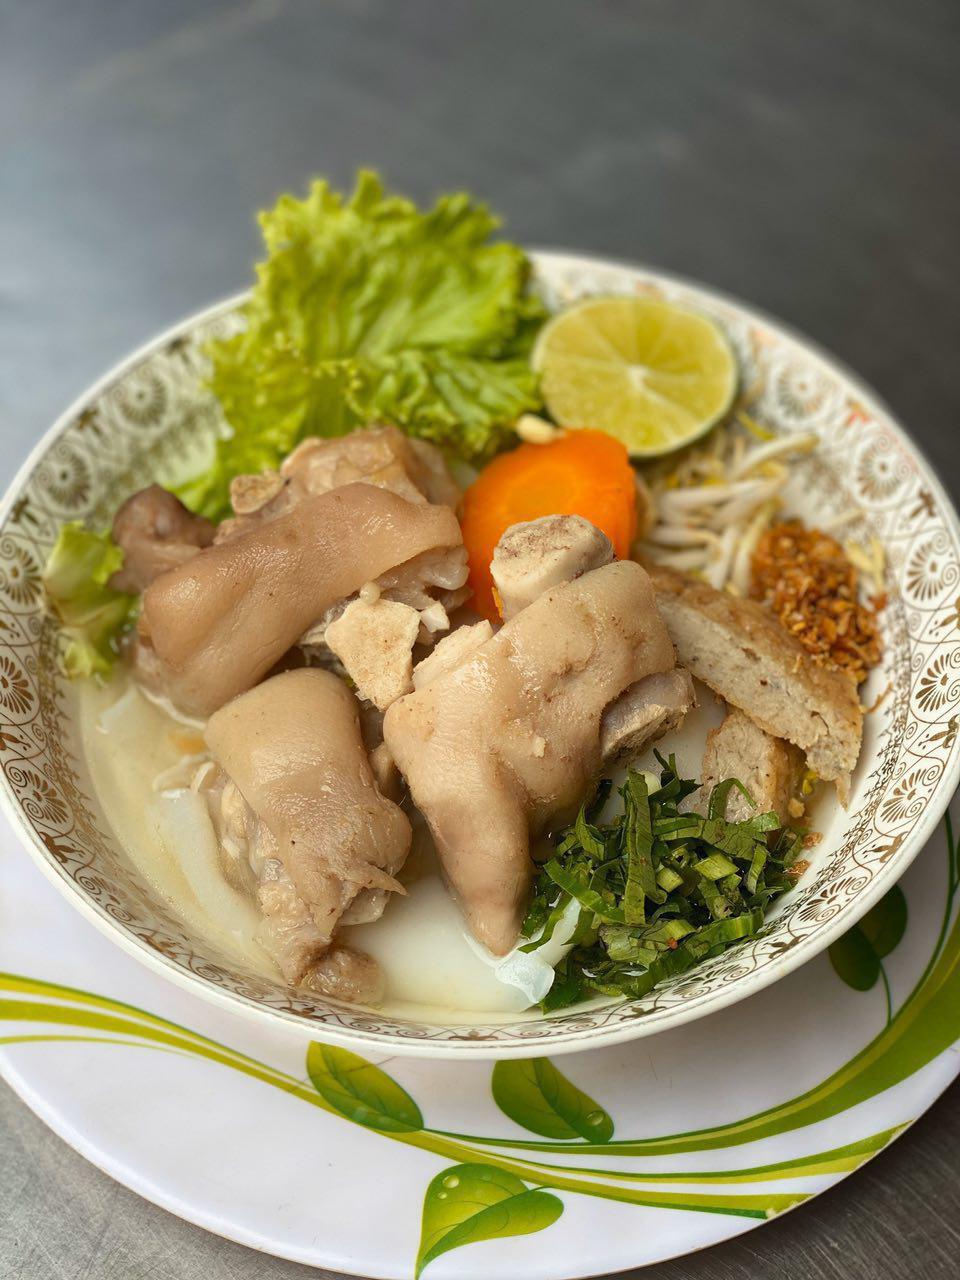 18.Banh Kanh Soup